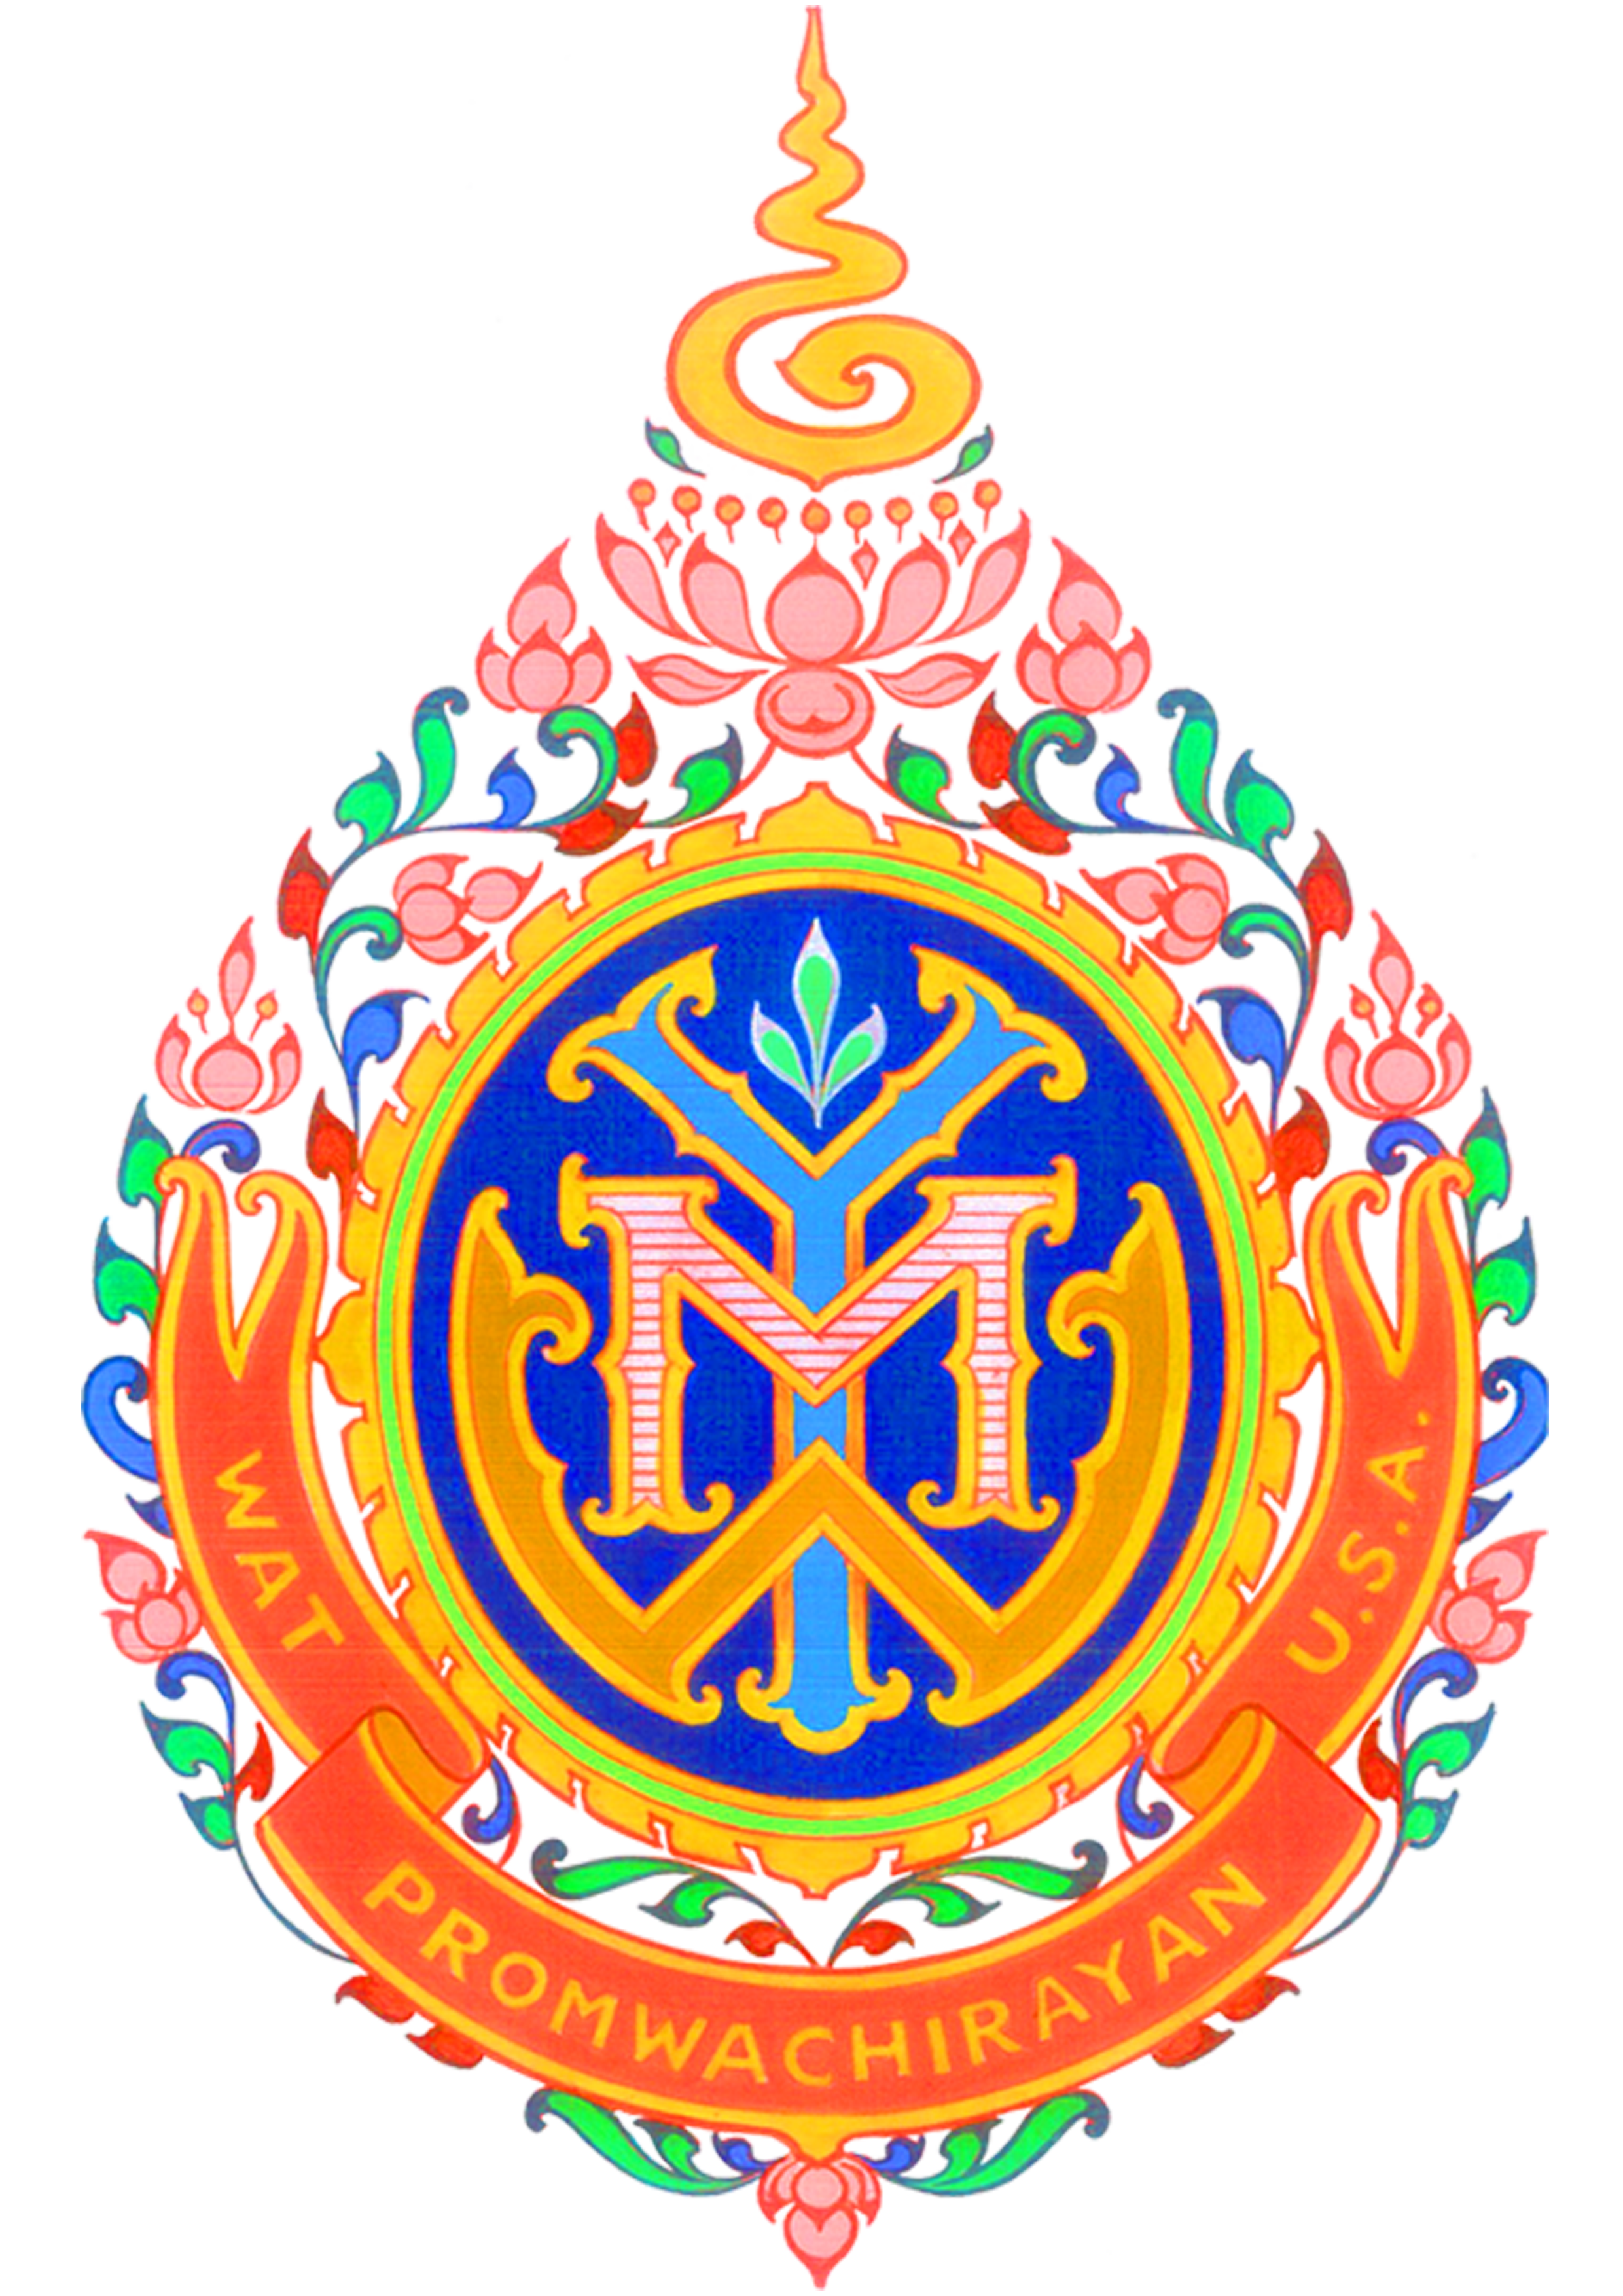 Wat Promwachirayan (Wat Thai of Minnesota)